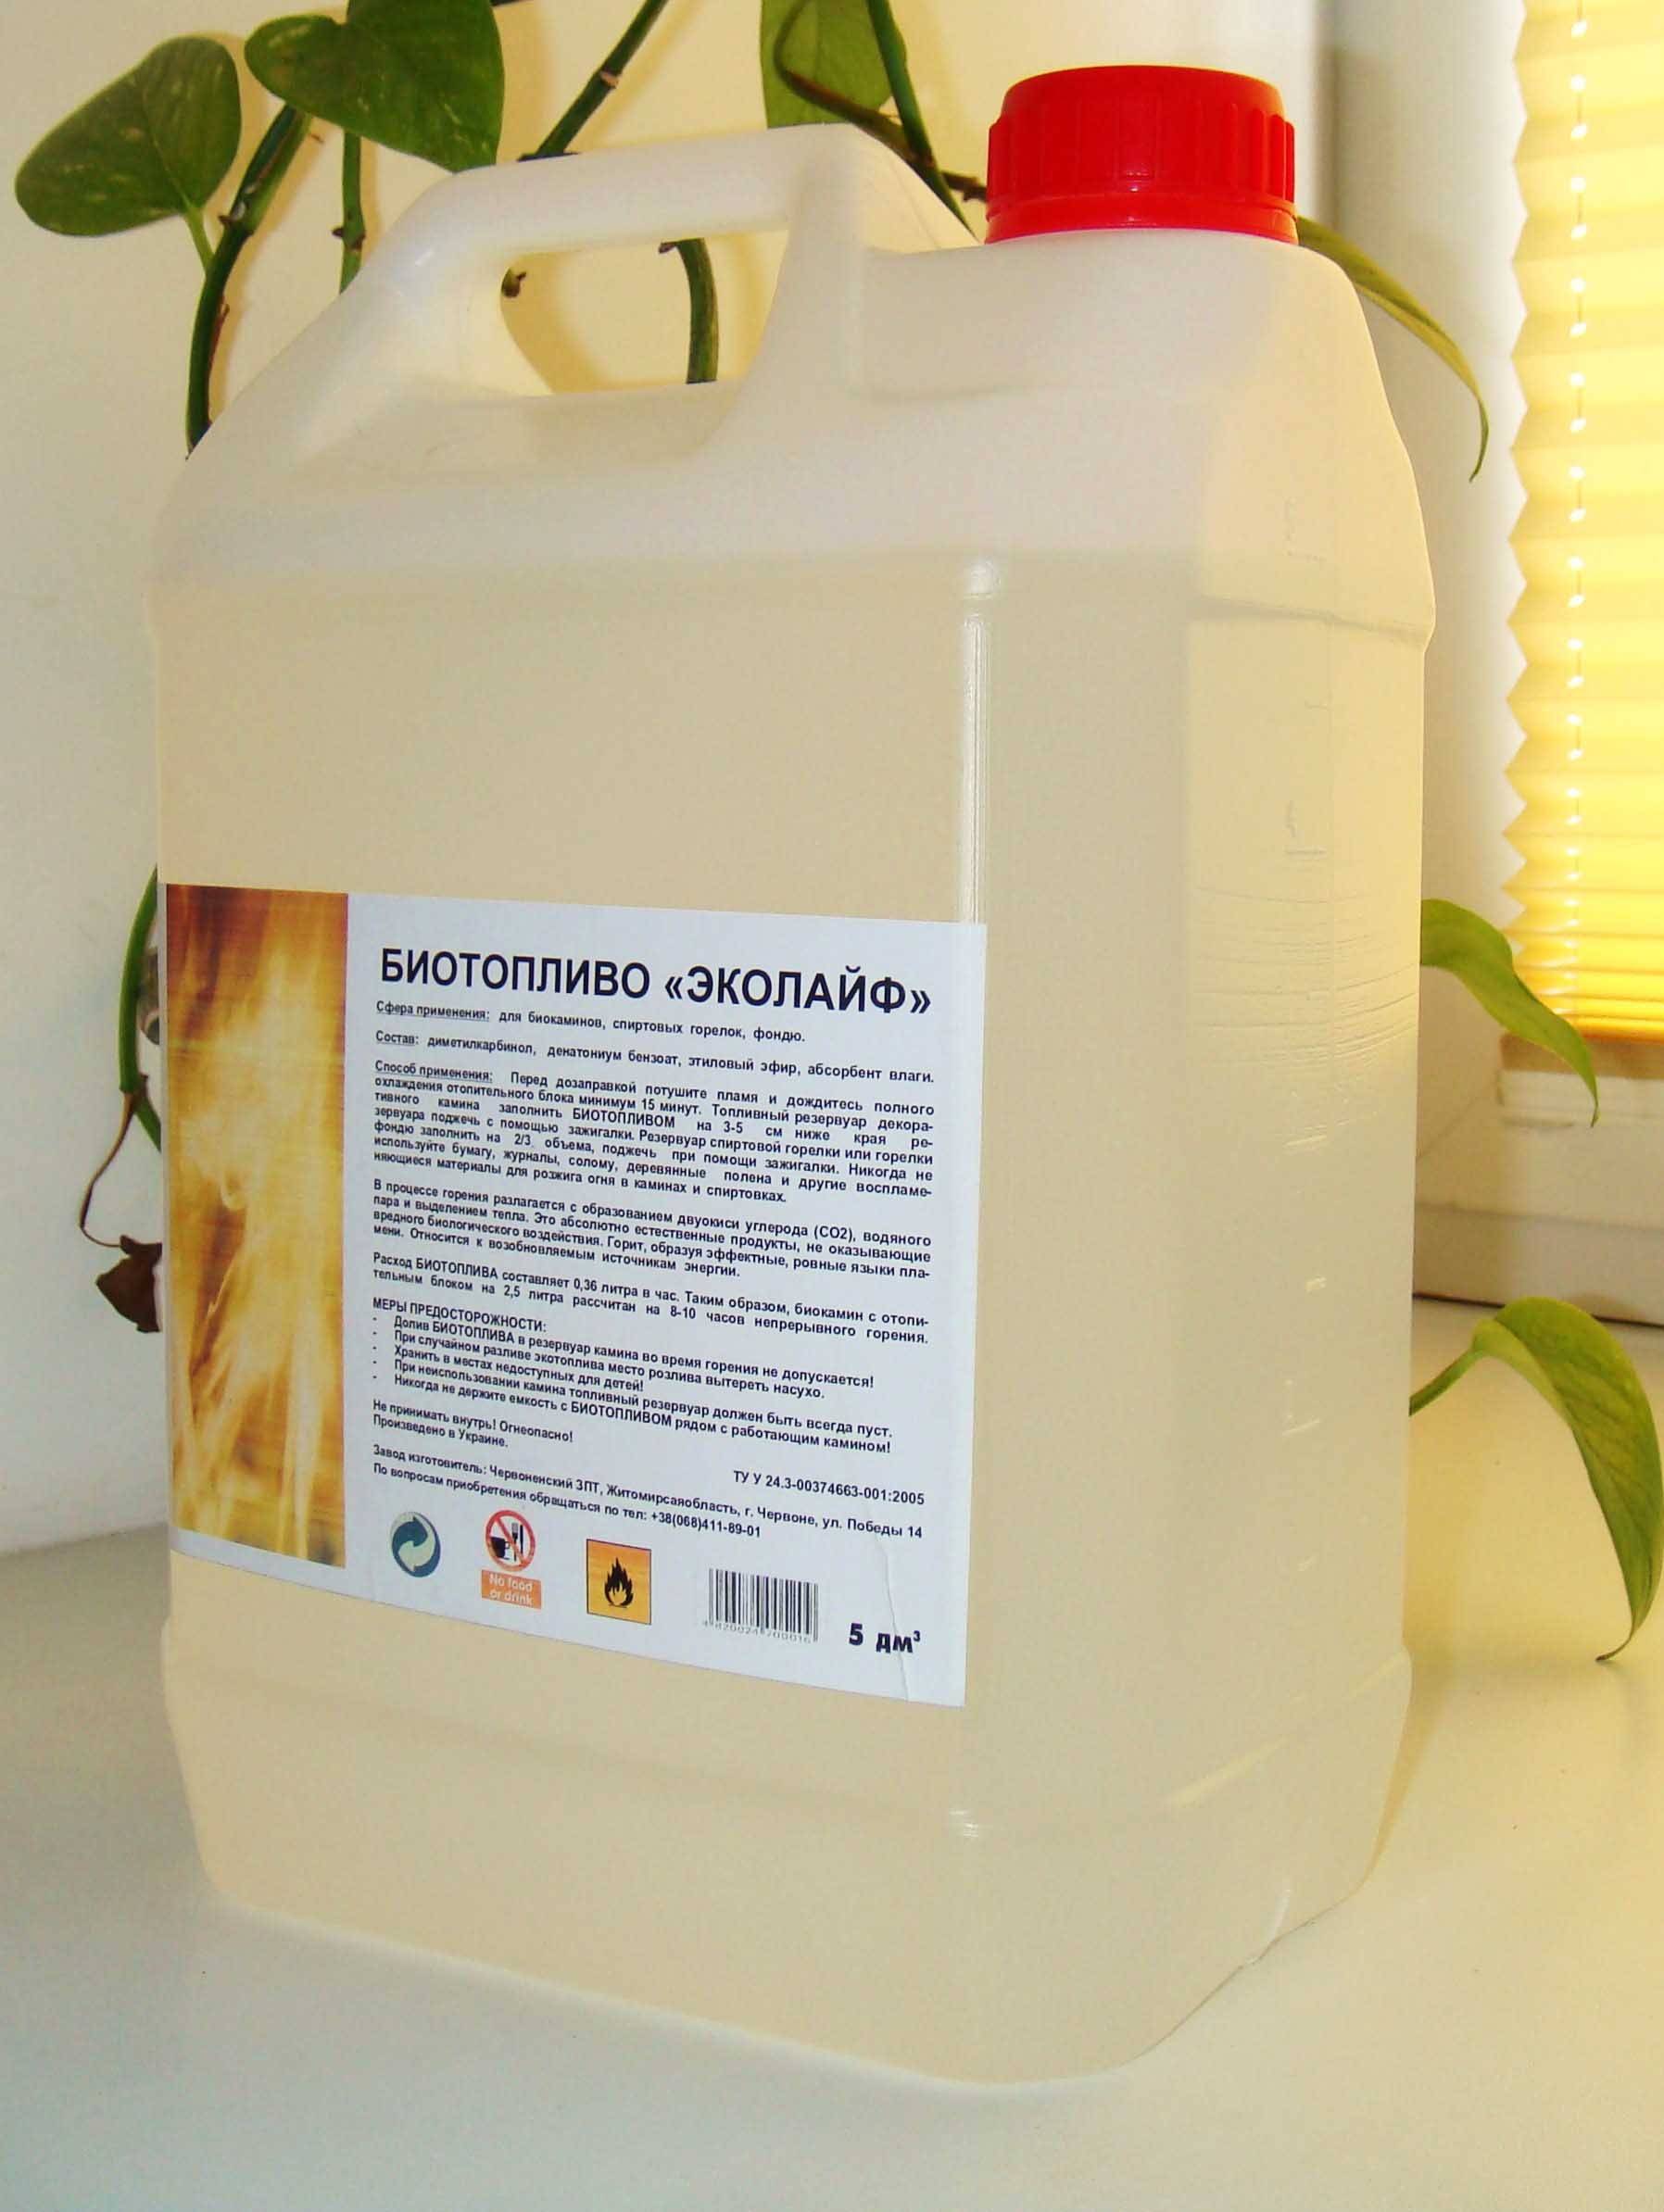 Топливо для биокамина - расход биотоплива, какой жидкостью заправлять